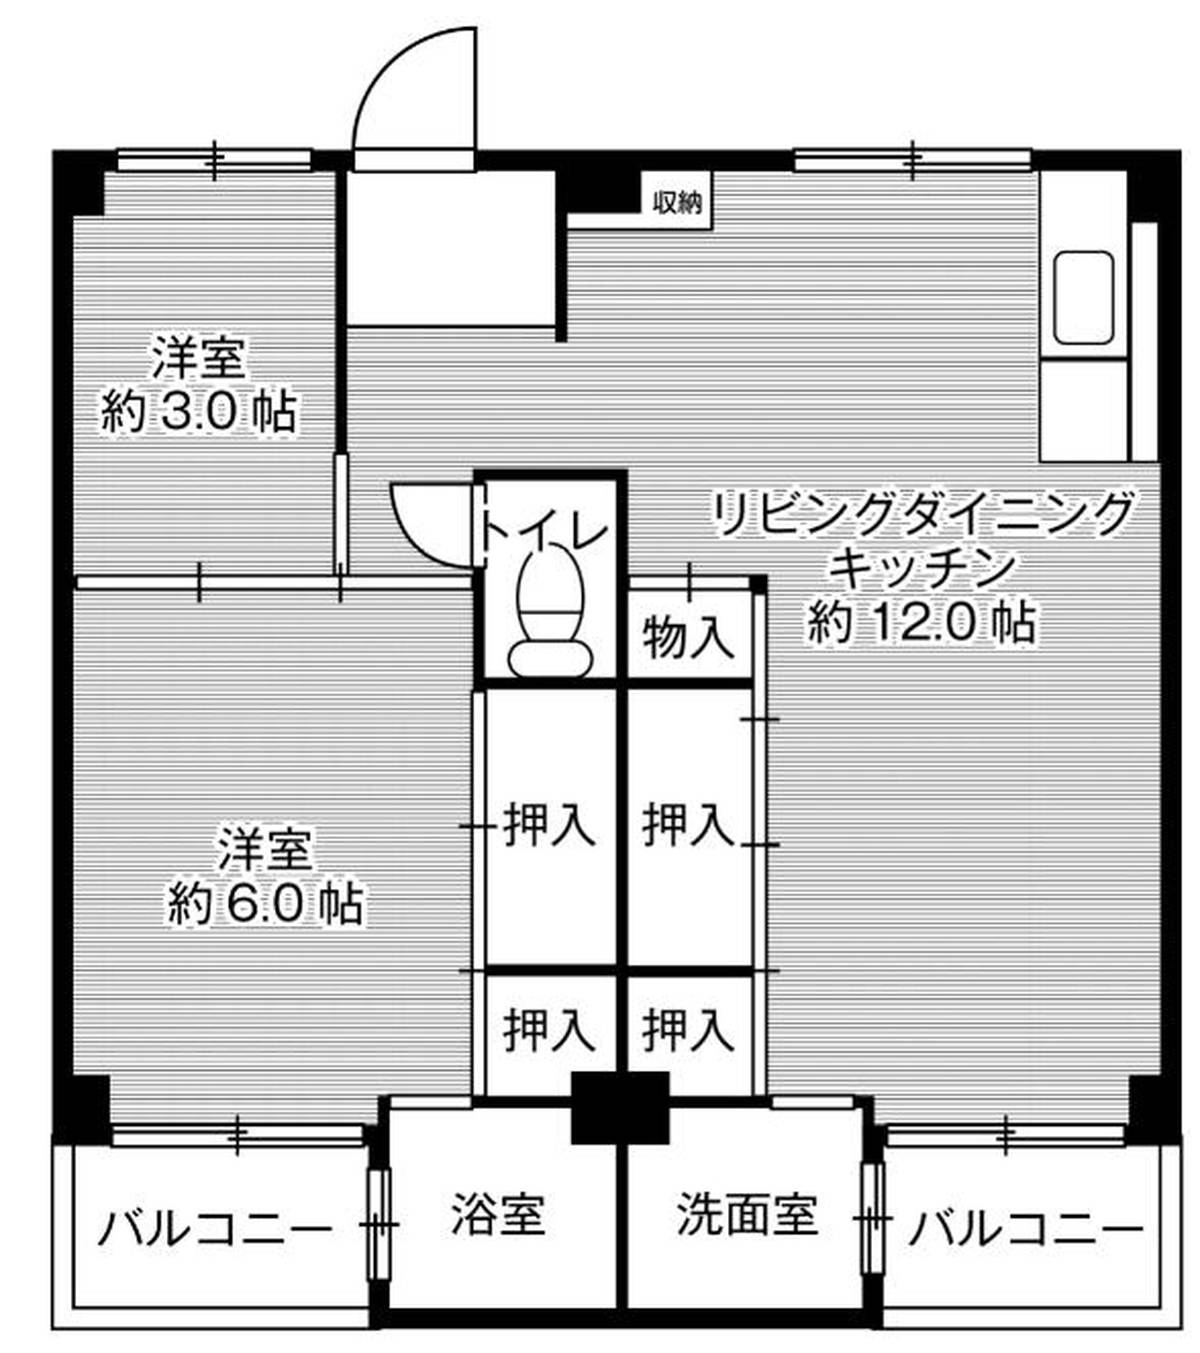 2LDK floorplan of Village House Miyanomae in Kakogawa-shi